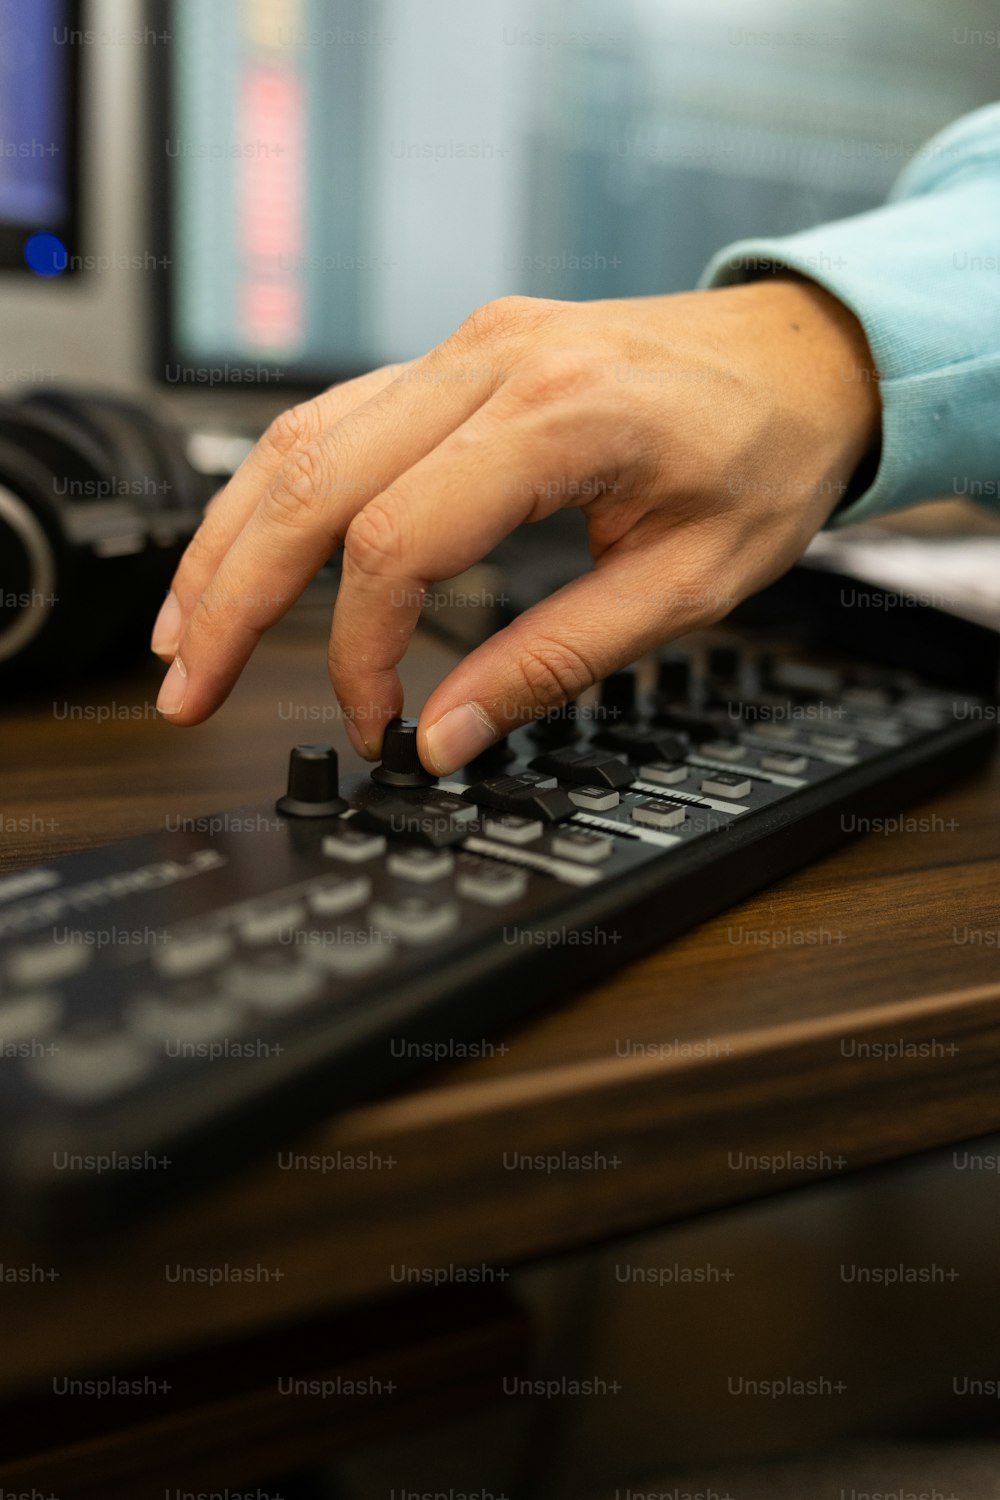 uma pessoa está pressionando botões em um teclado